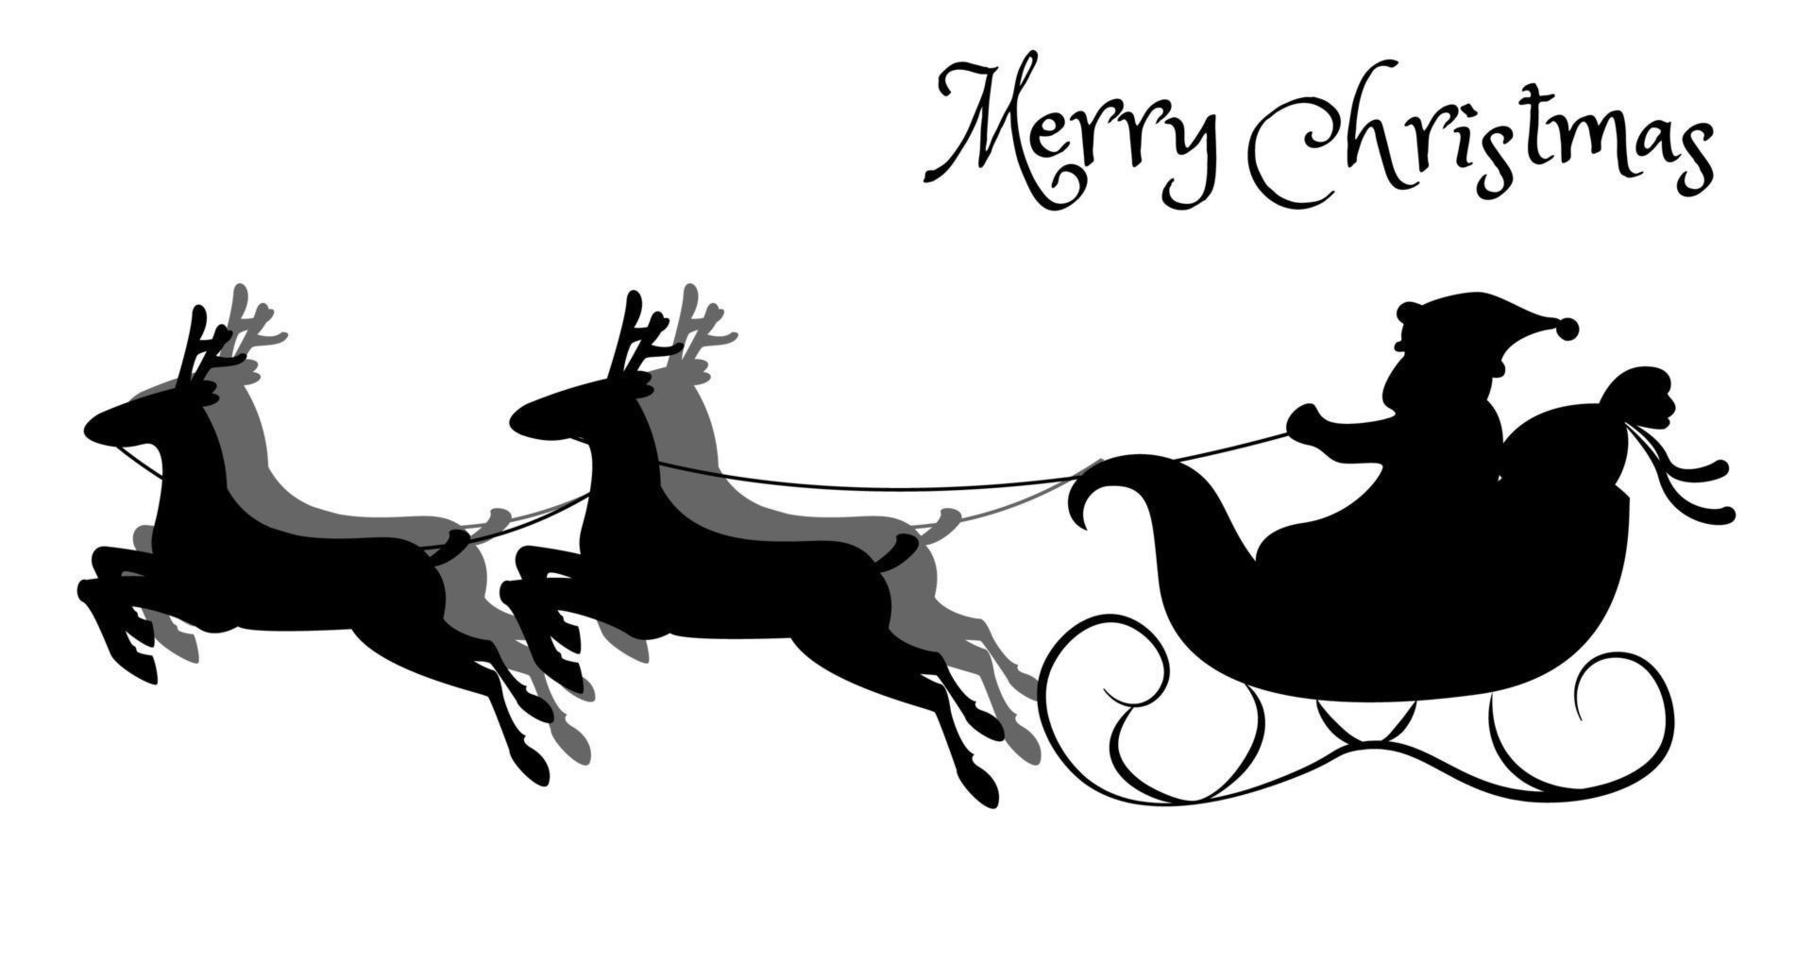 Papai Noel em um trenó puxado por renas. carrega presentes de natal e ano novo. a silhueta é desenhada à mão. Isolado em um fundo branco. vetor. vetor